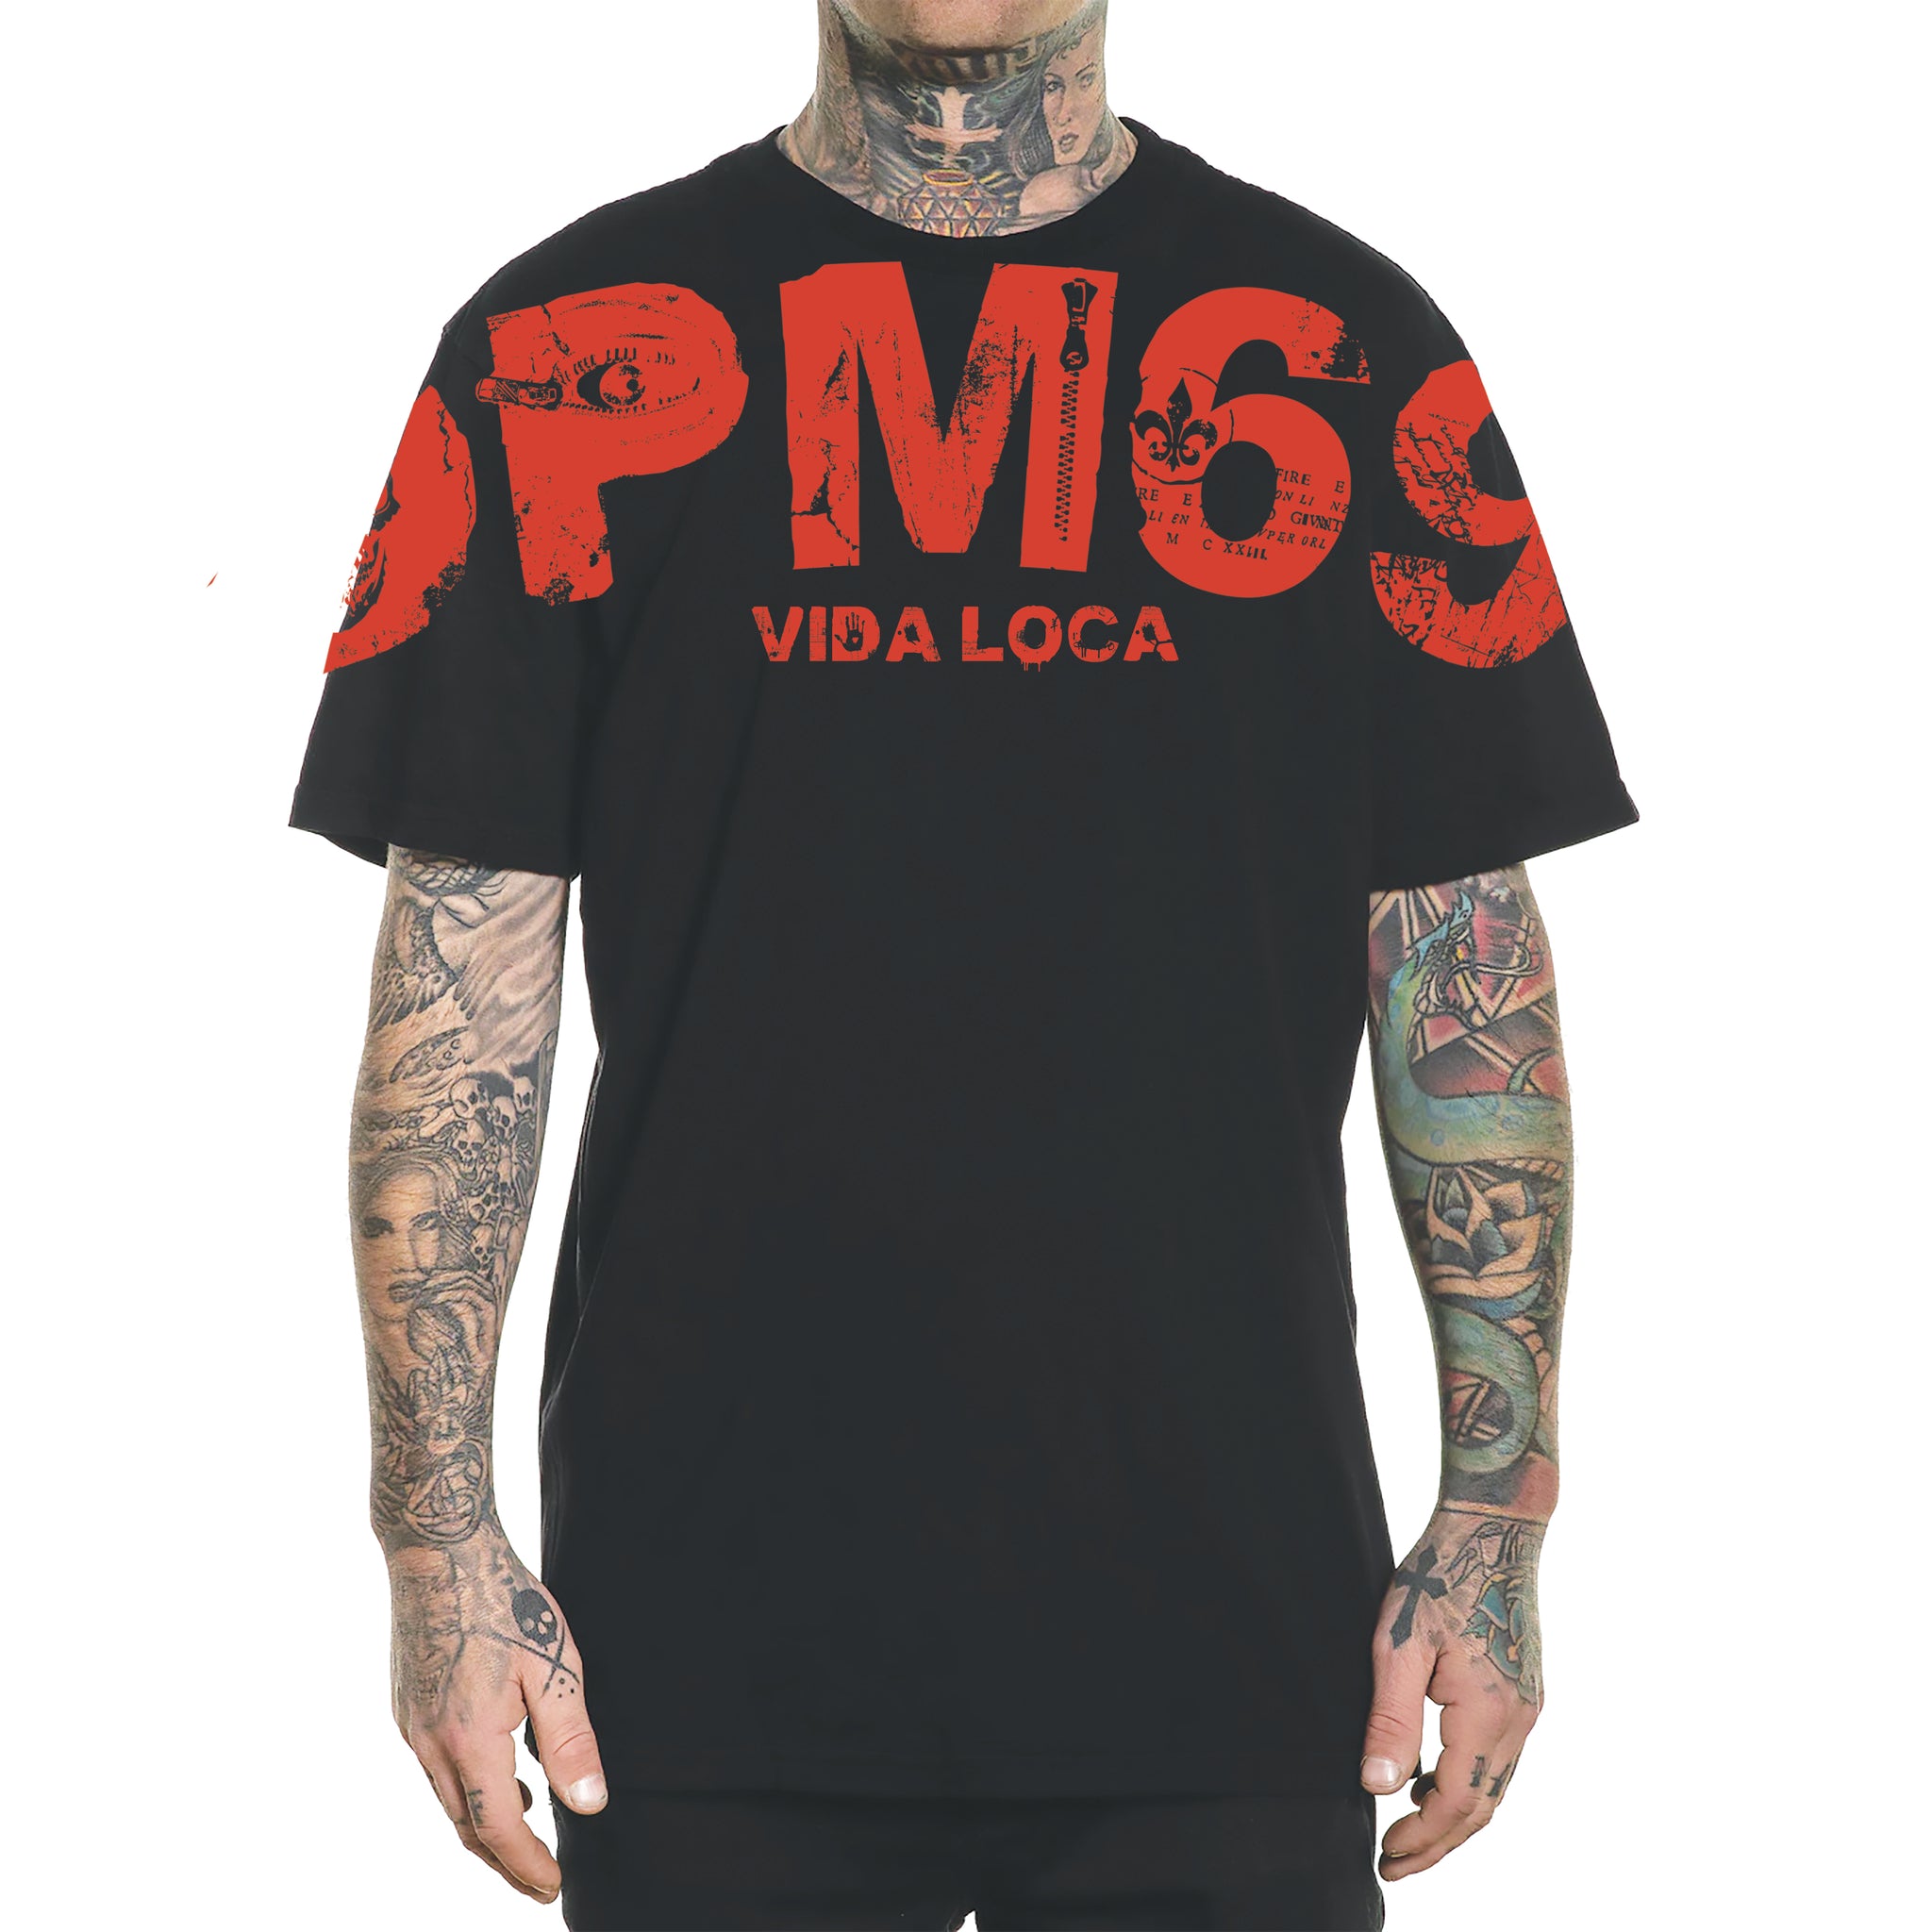 DPM69 T-Shirt Fatto a mano in Italia VIDA LOCA